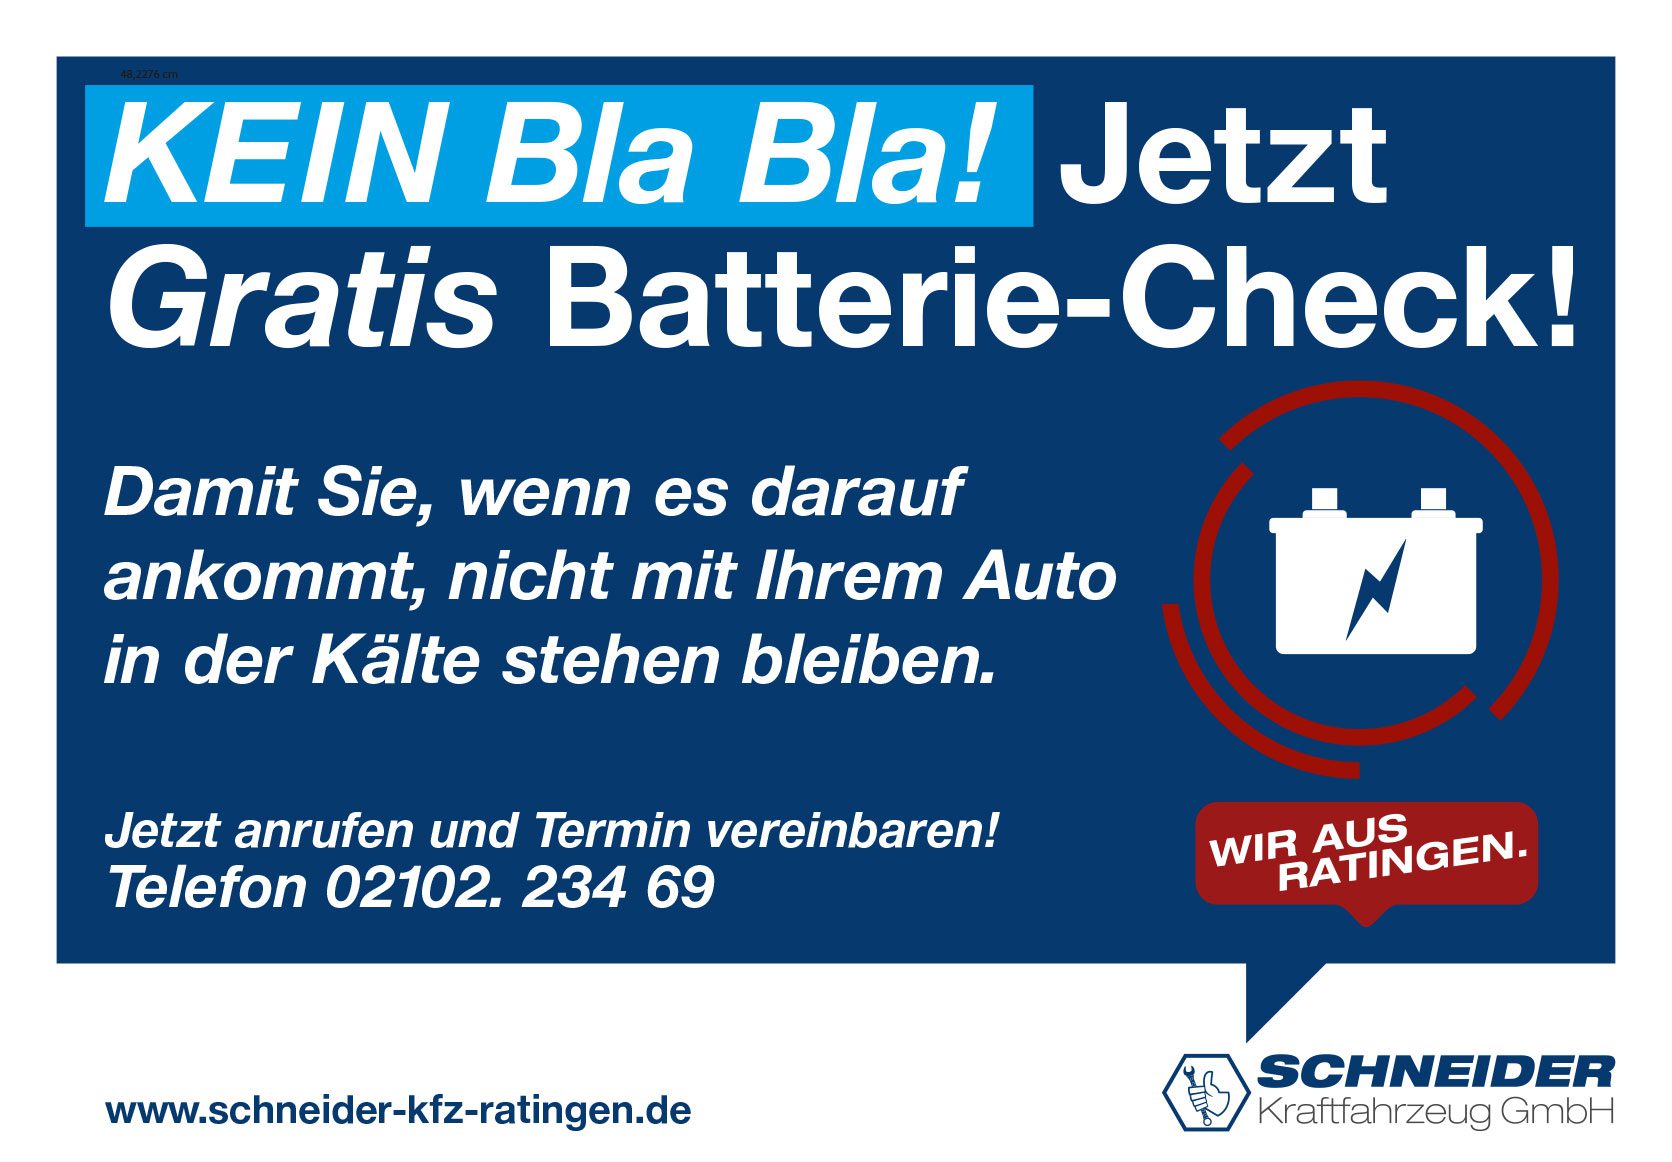 Schneider KFZ GmbH Gratis Batterie Check